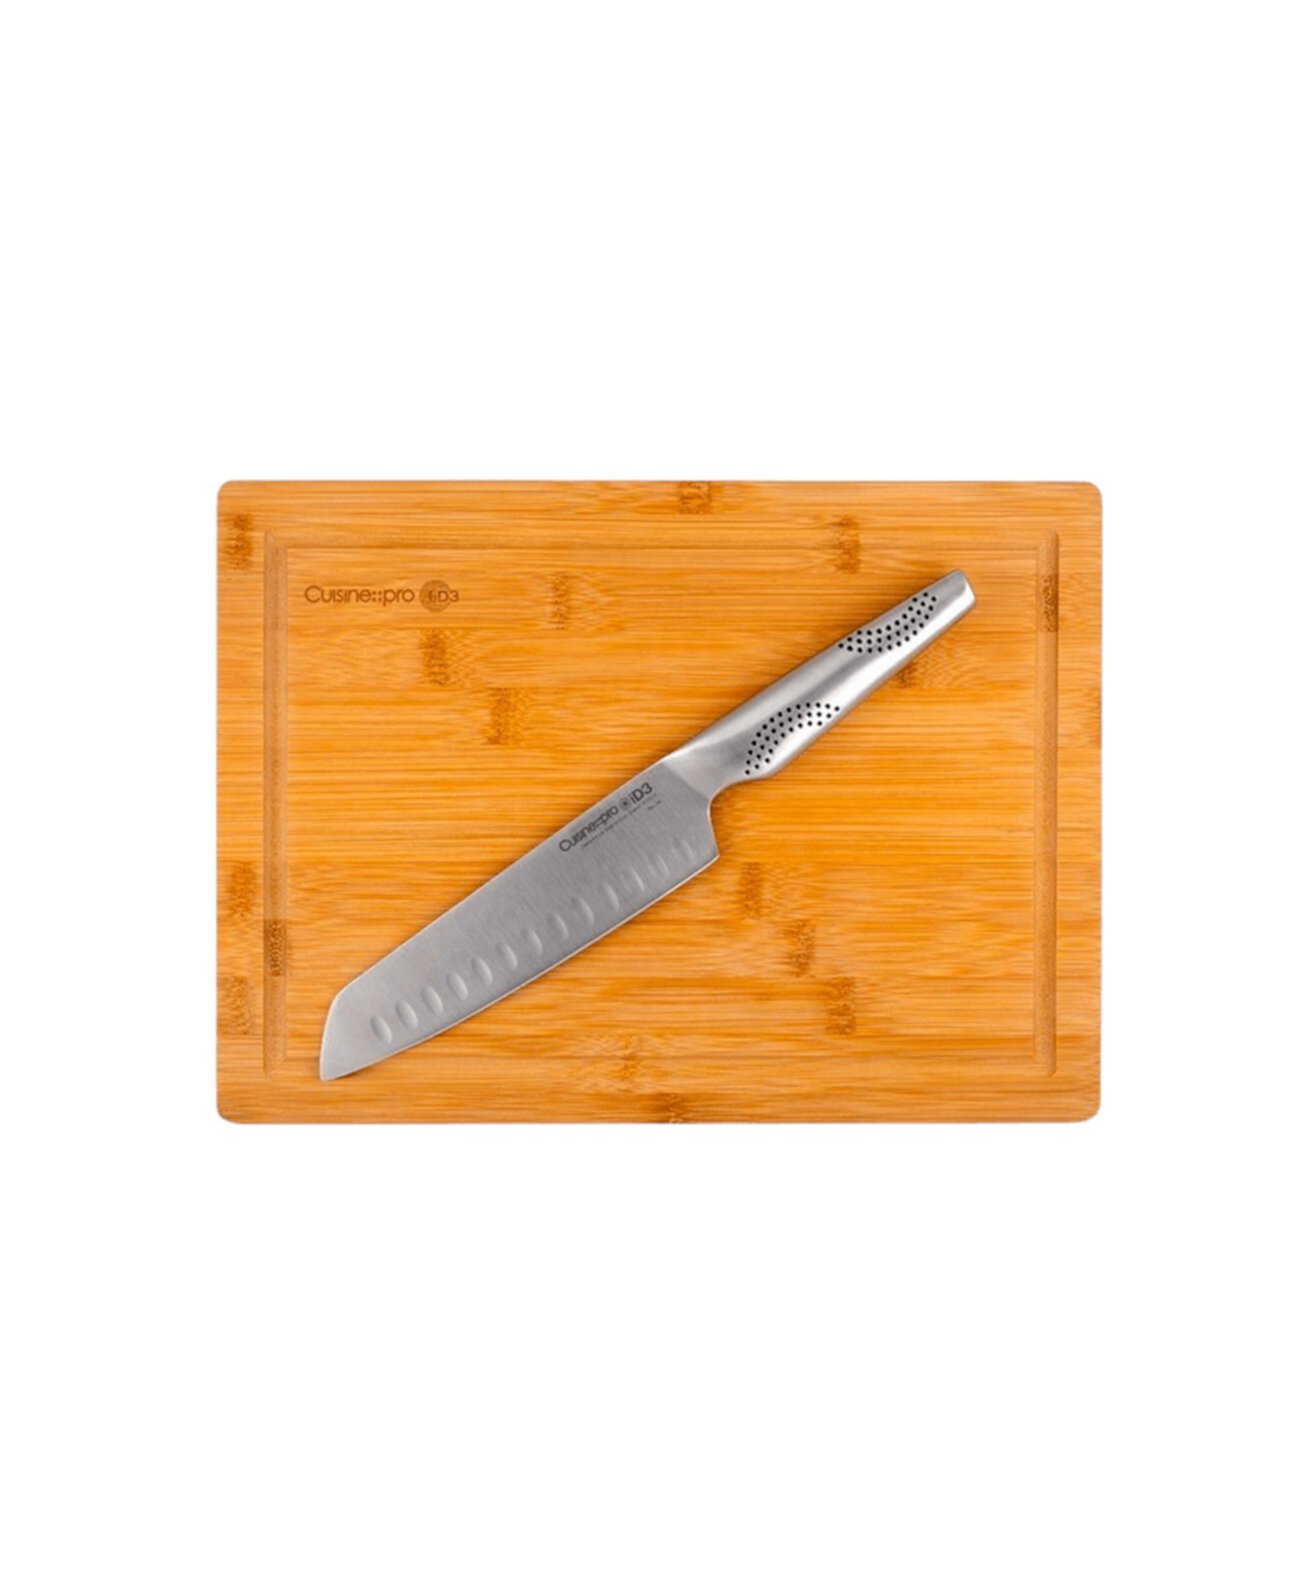 Id3 Набор досок для ножей Сантоку, 7 дюймов, 2 предмета Cuisine::pro®